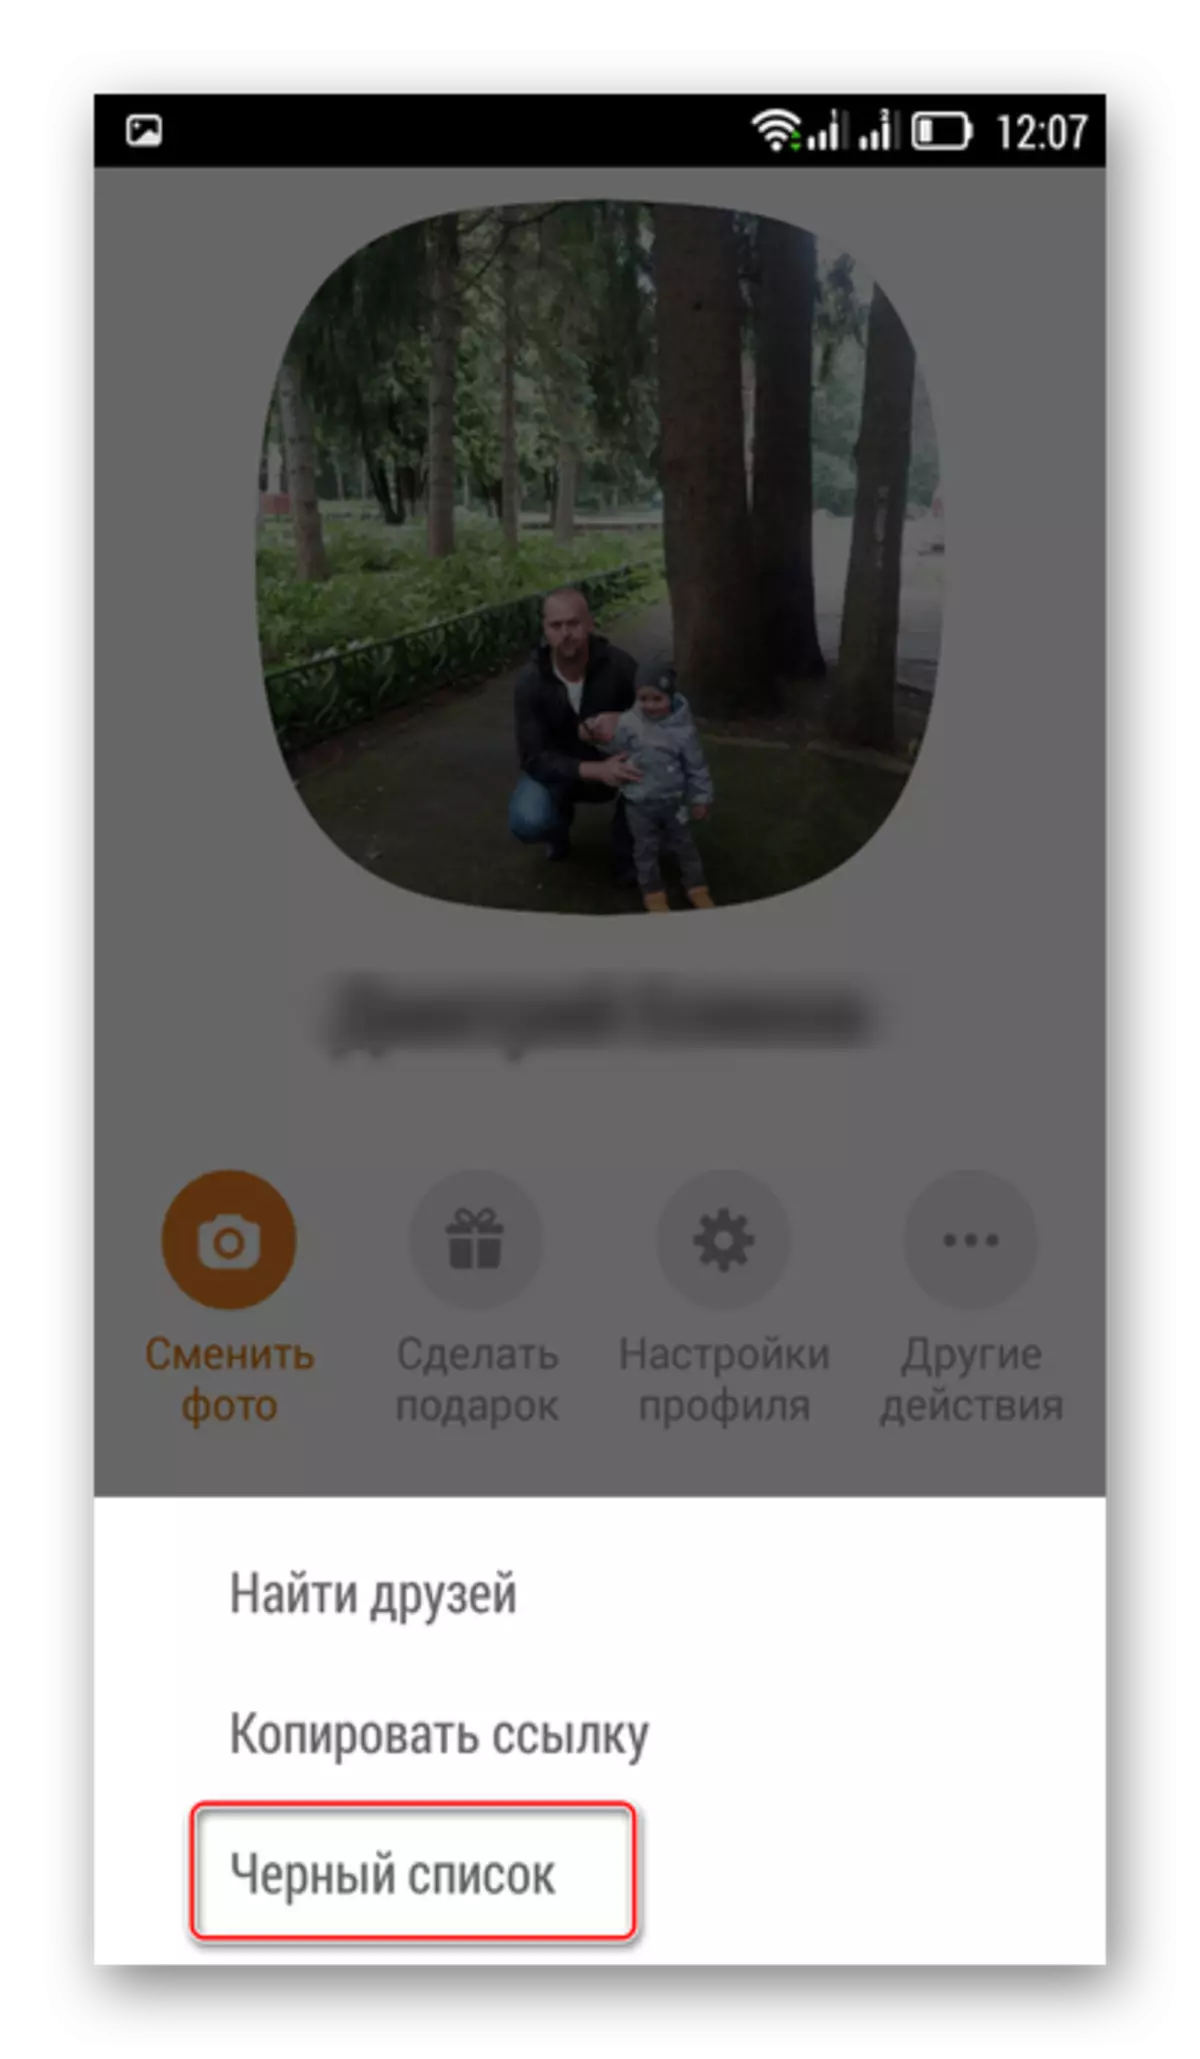 Tulisan lampah séjén dina aplikasi Mobile Onnoklassniki